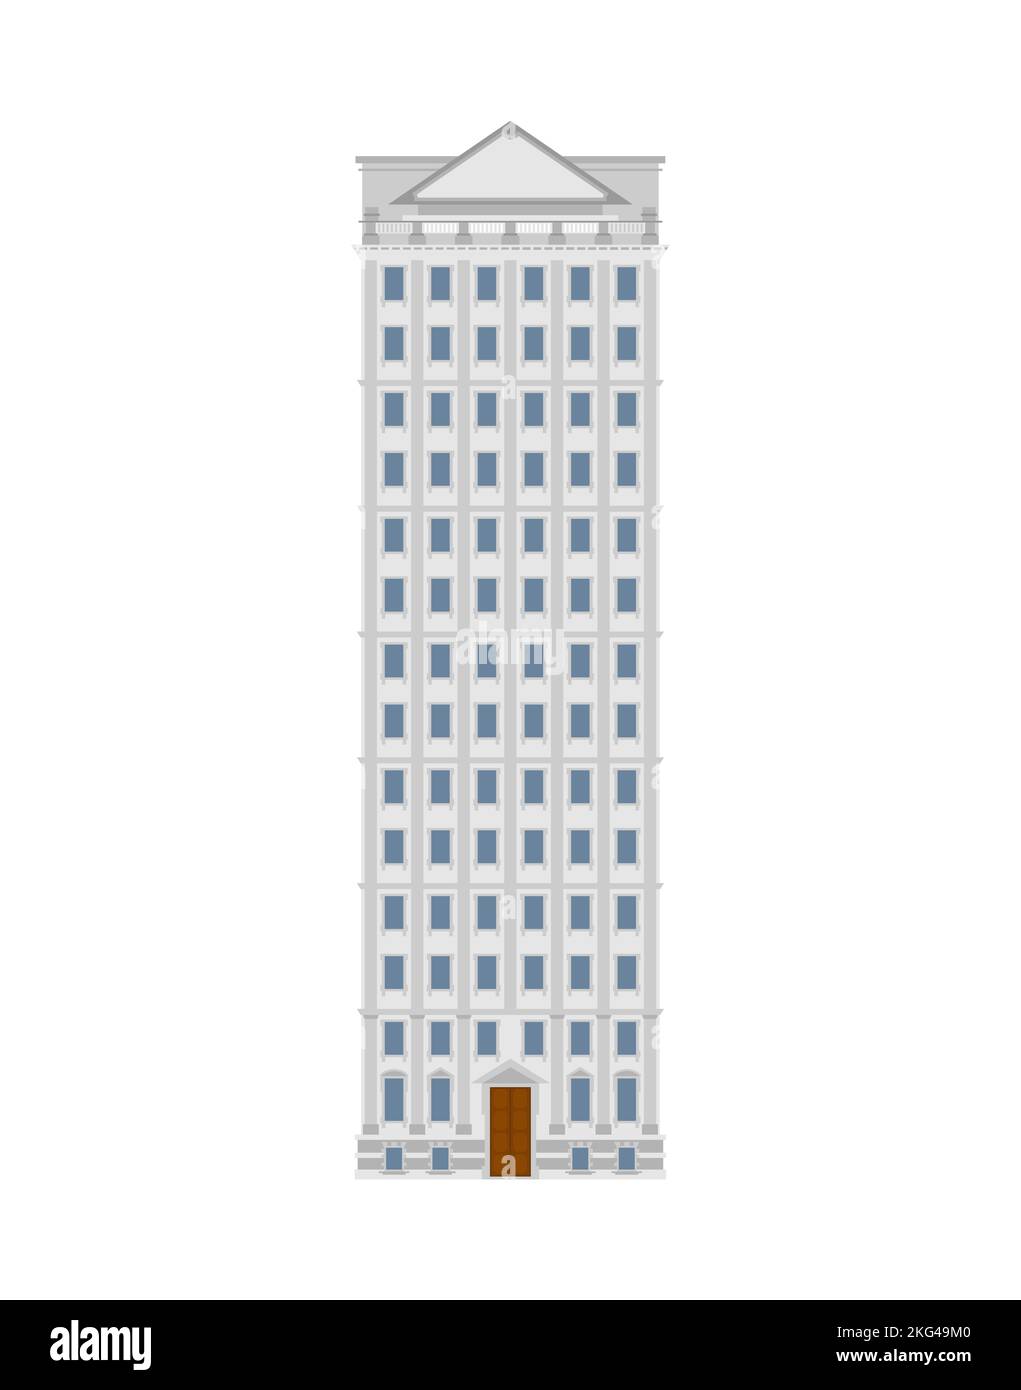 Immeuble de bureaux en hauteur isolé. Illustration vectorielle Illustration de Vecteur